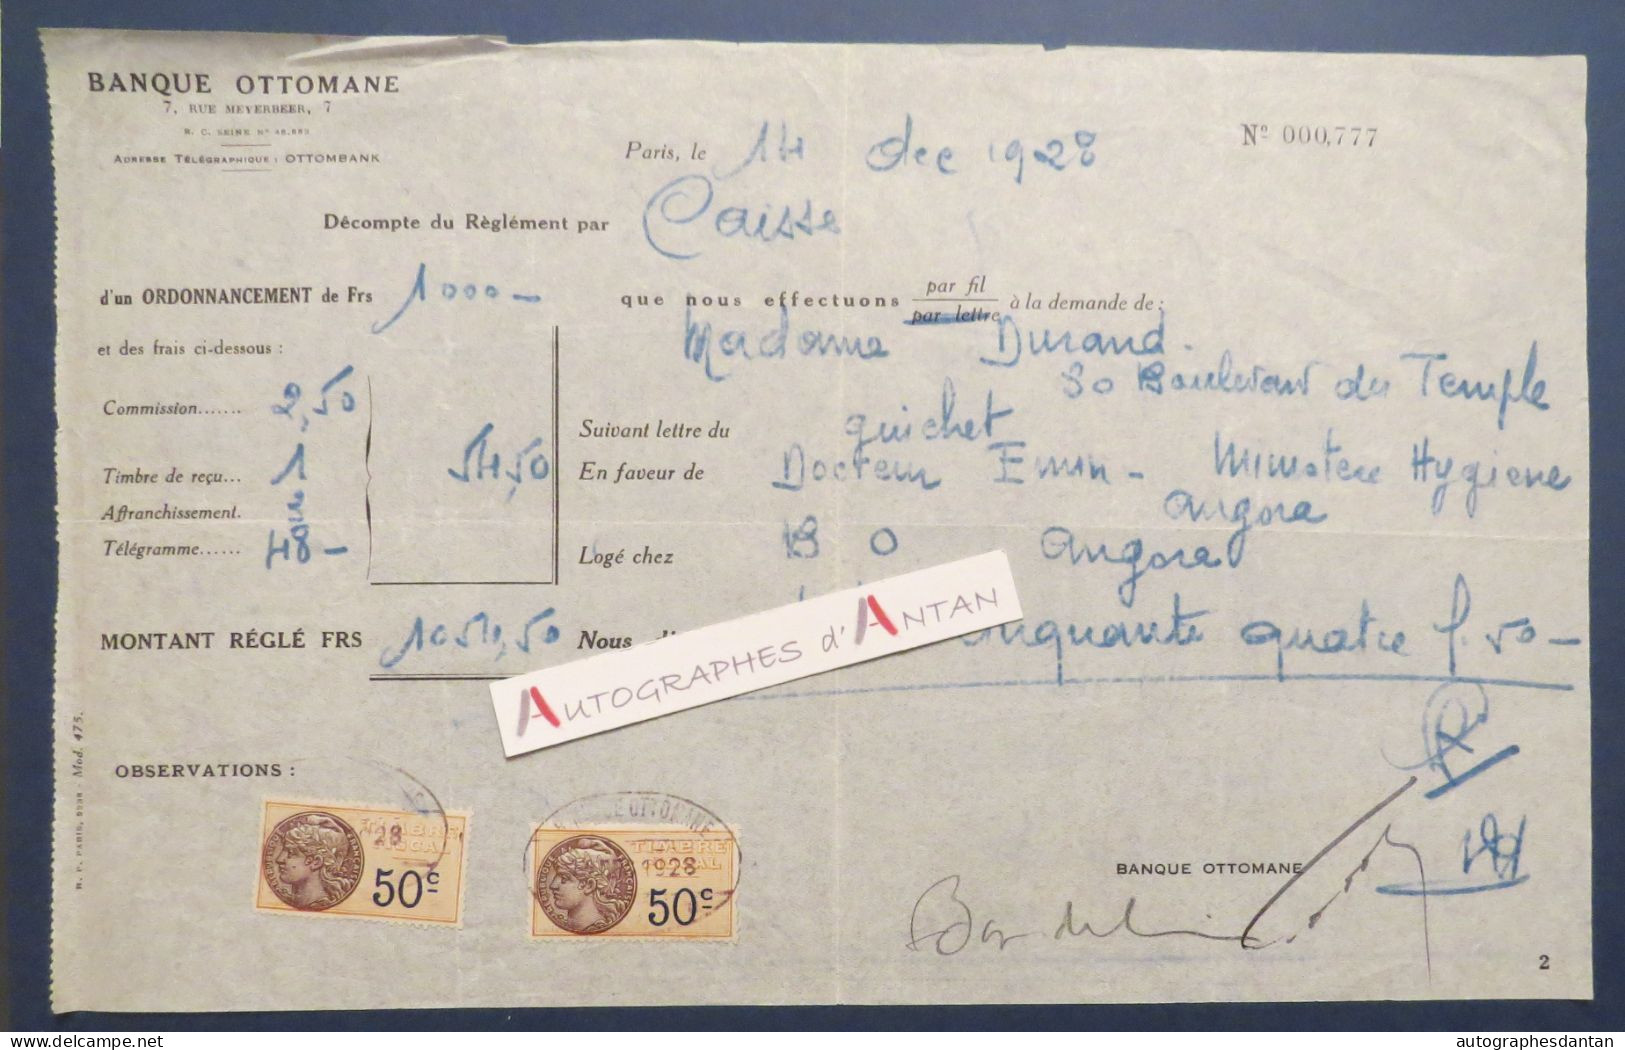 ● Banque Ottomane 1928 Décompte De Règlement Mme Durand > Docteur Ewin - Timbres Fiscaux 50c - Bank & Insurance